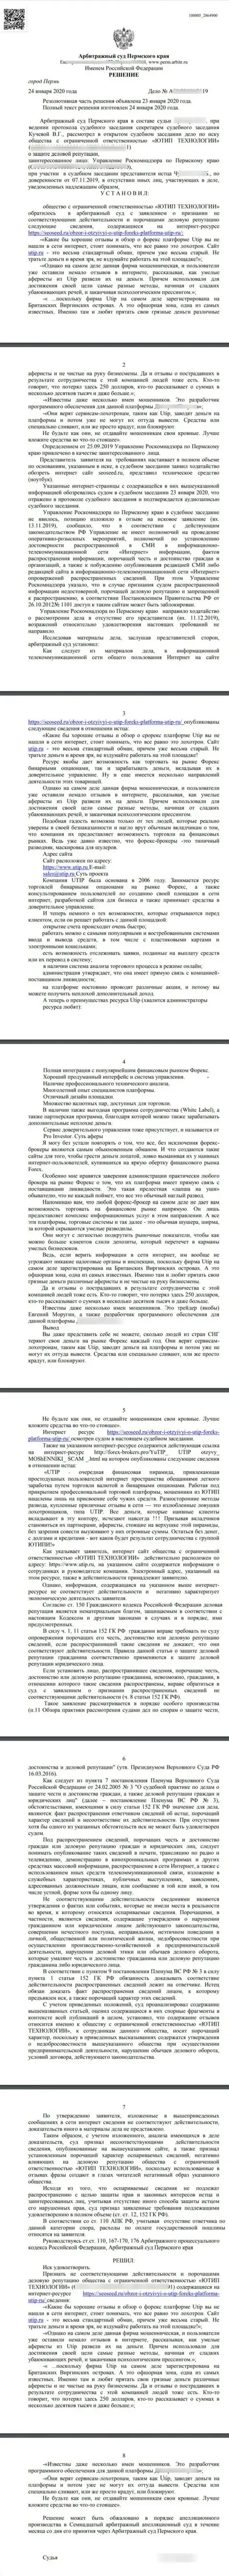 Судебный иск лохотронщиков ЮТИП в отношении web-сервиса seoseed ru, который удовлетворен самым справедливым судом в мире